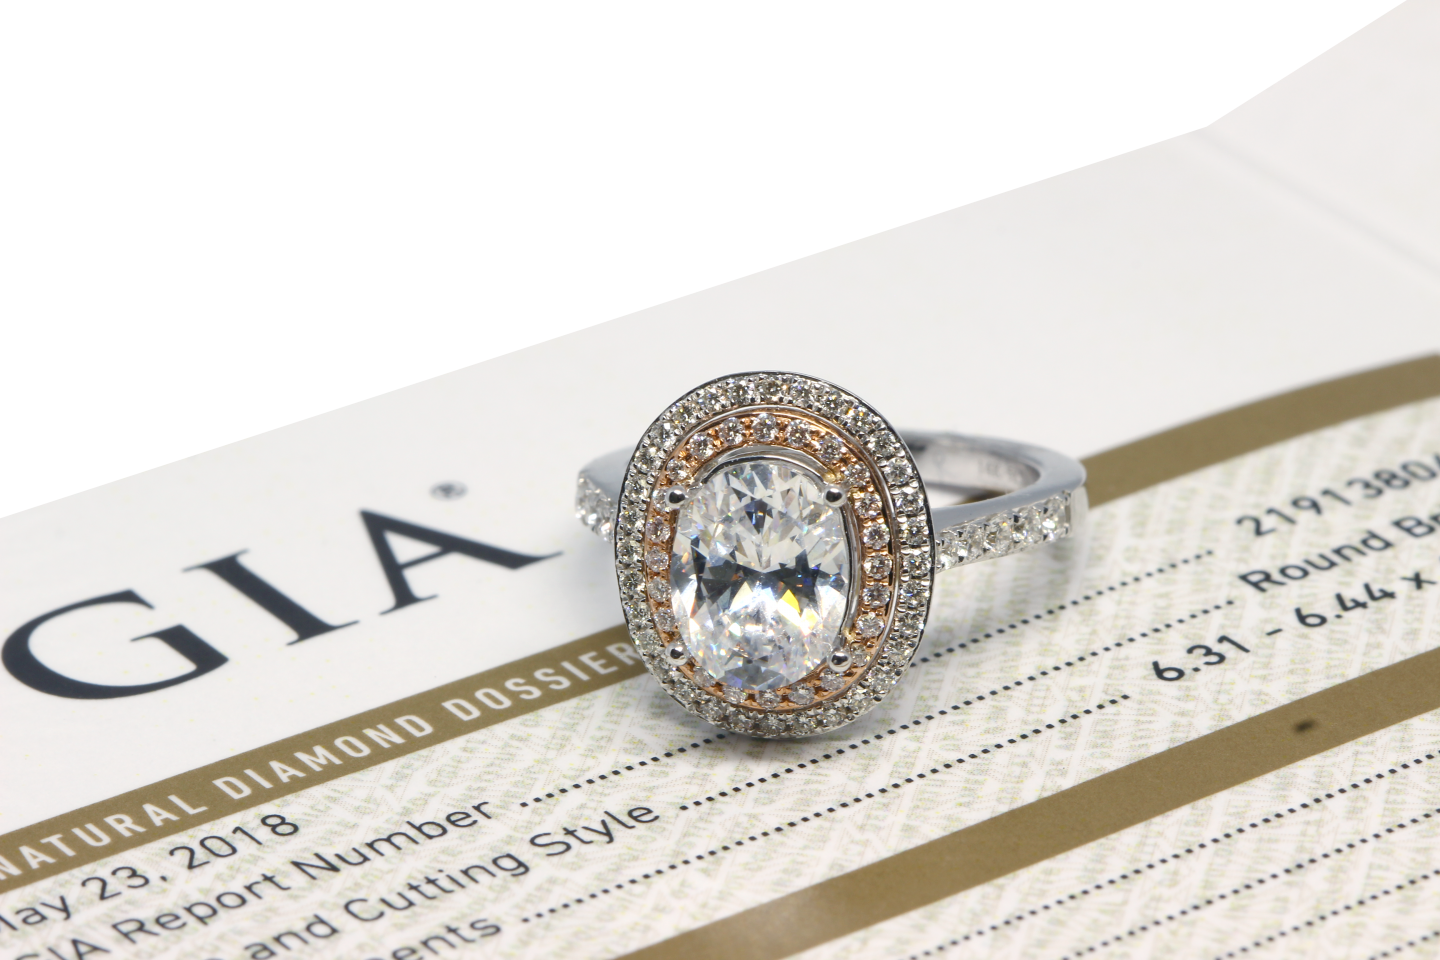 1920s Designer Intricate setting SWG Diamond Ring $10K Appraisal Value  w/CoA! | eBay